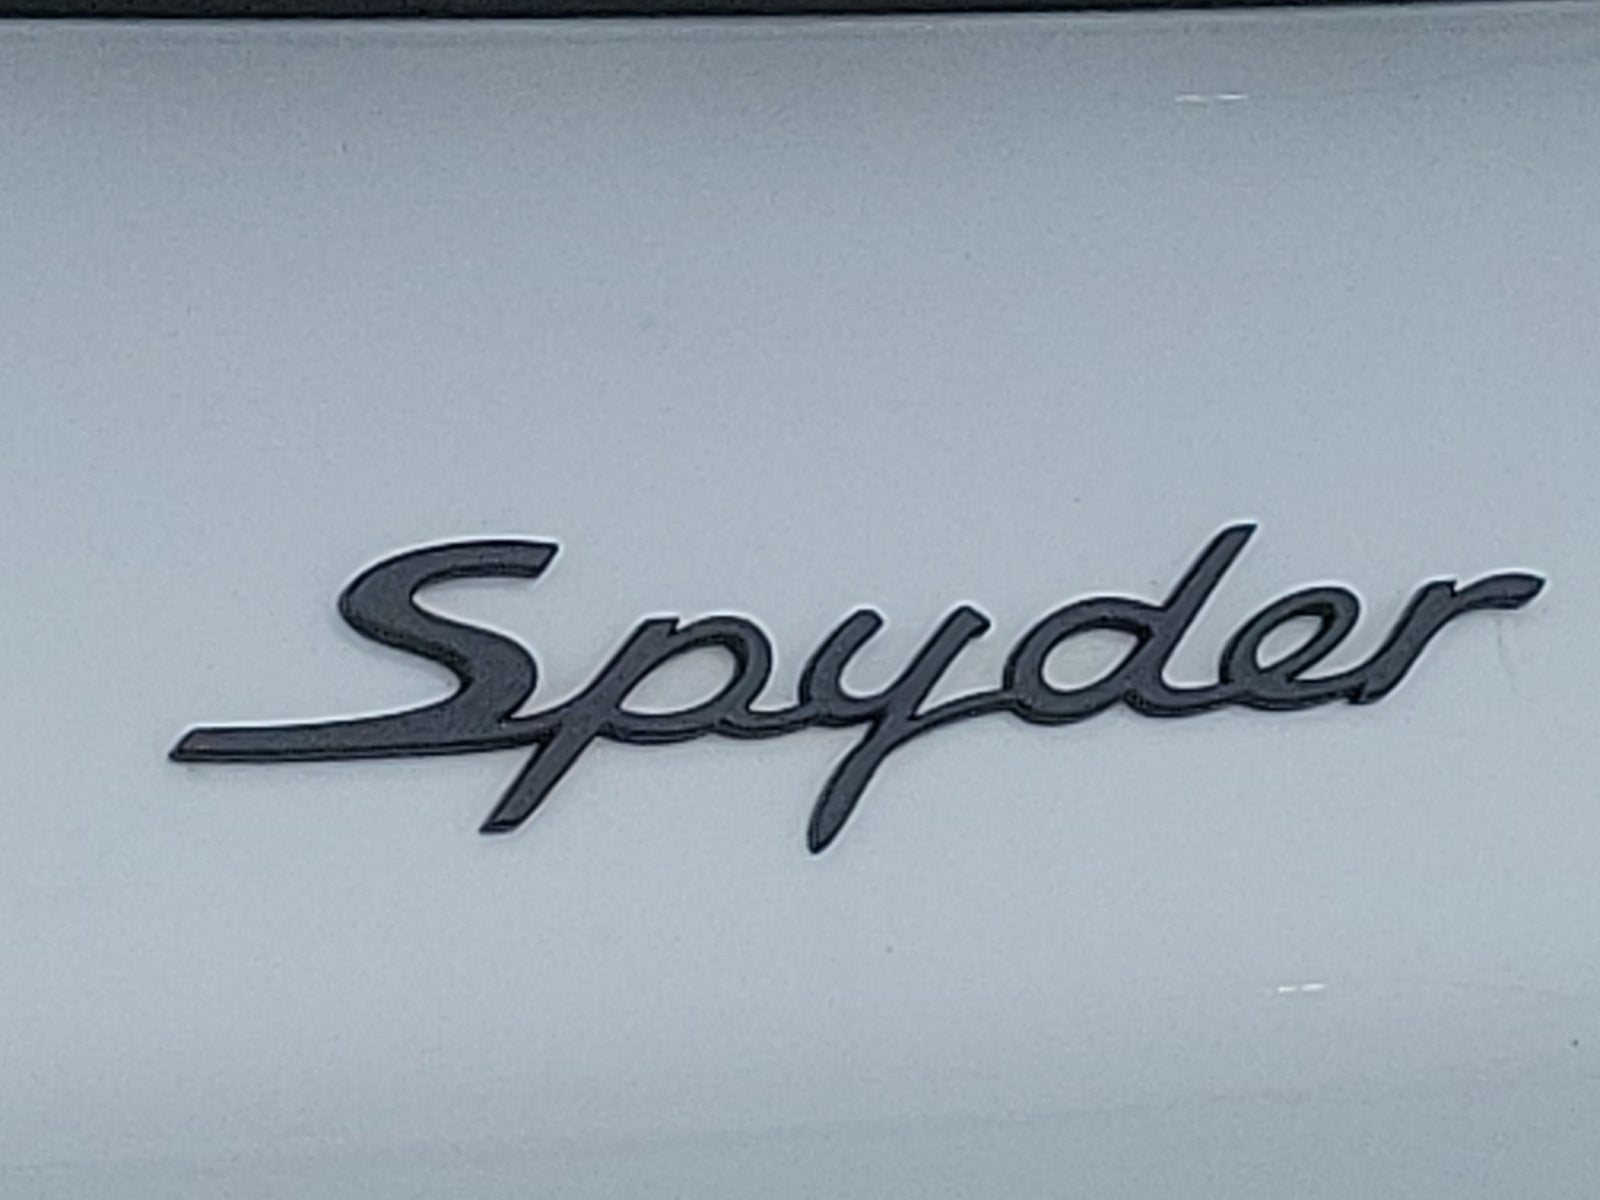 2020 Porsche 718 Spyder Roadster